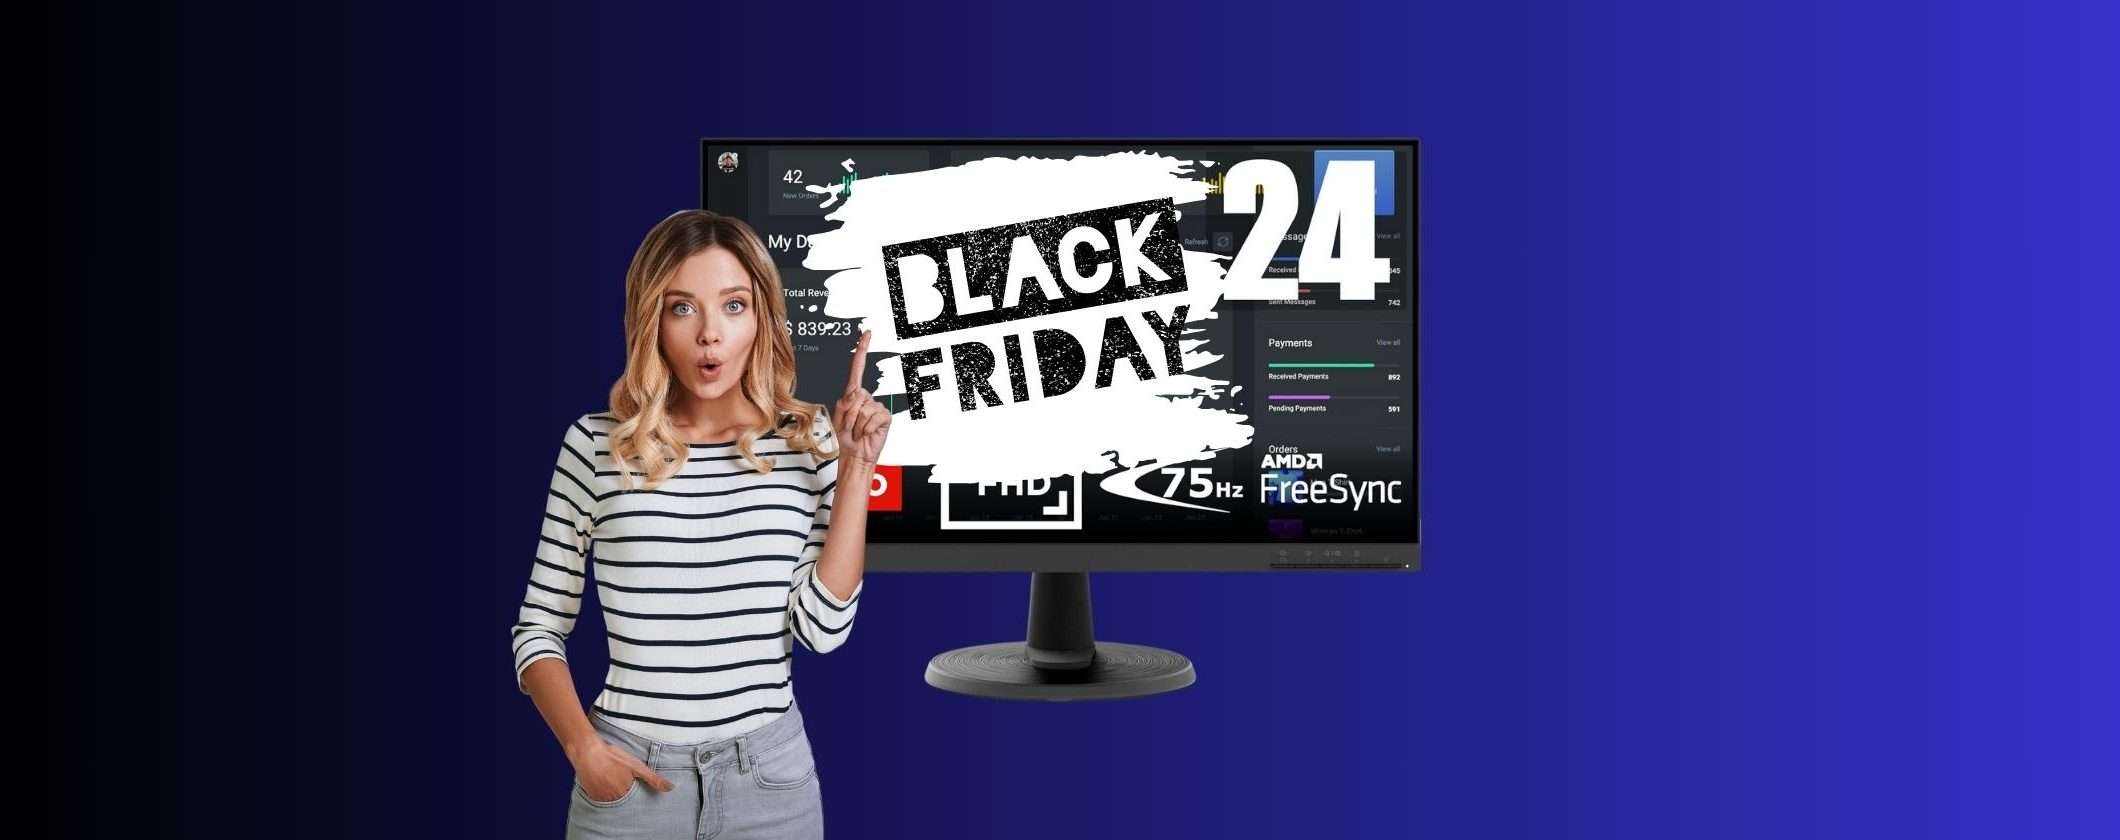 Meno di 100€ per il Monitor Lenovo D24 al Black Friday